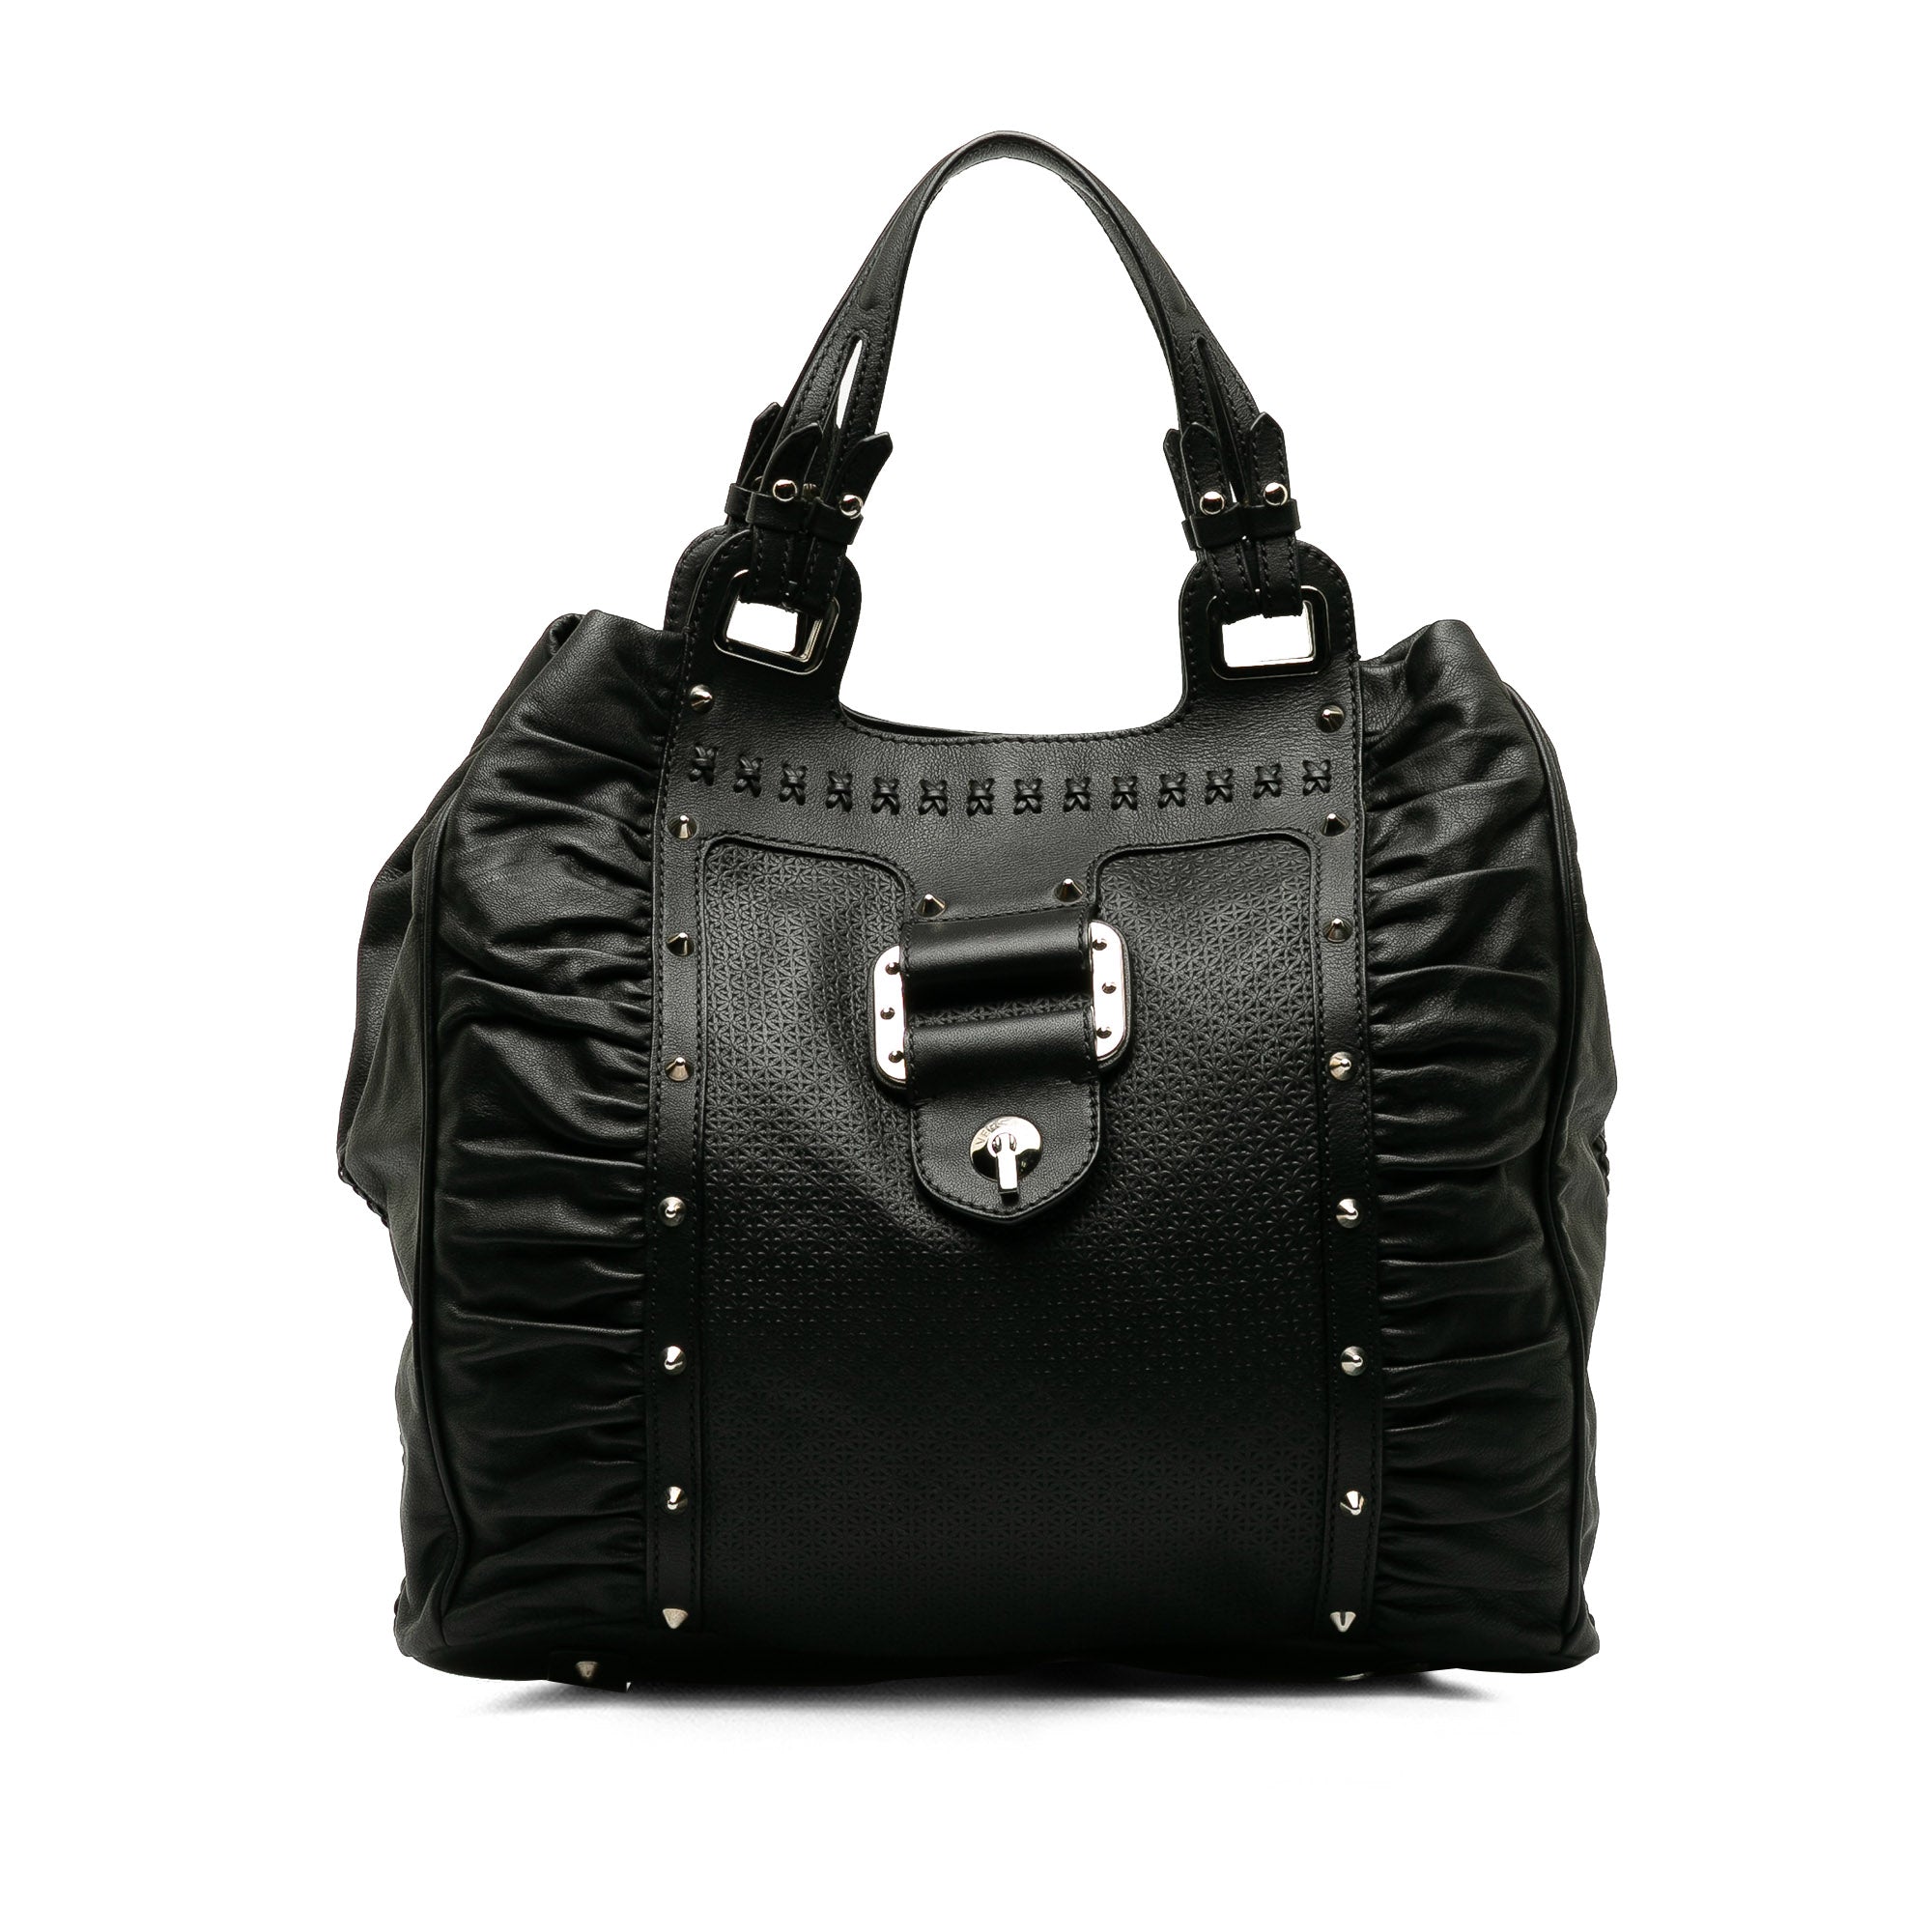 Black Versace Leather Tote Bag - Designer Revival